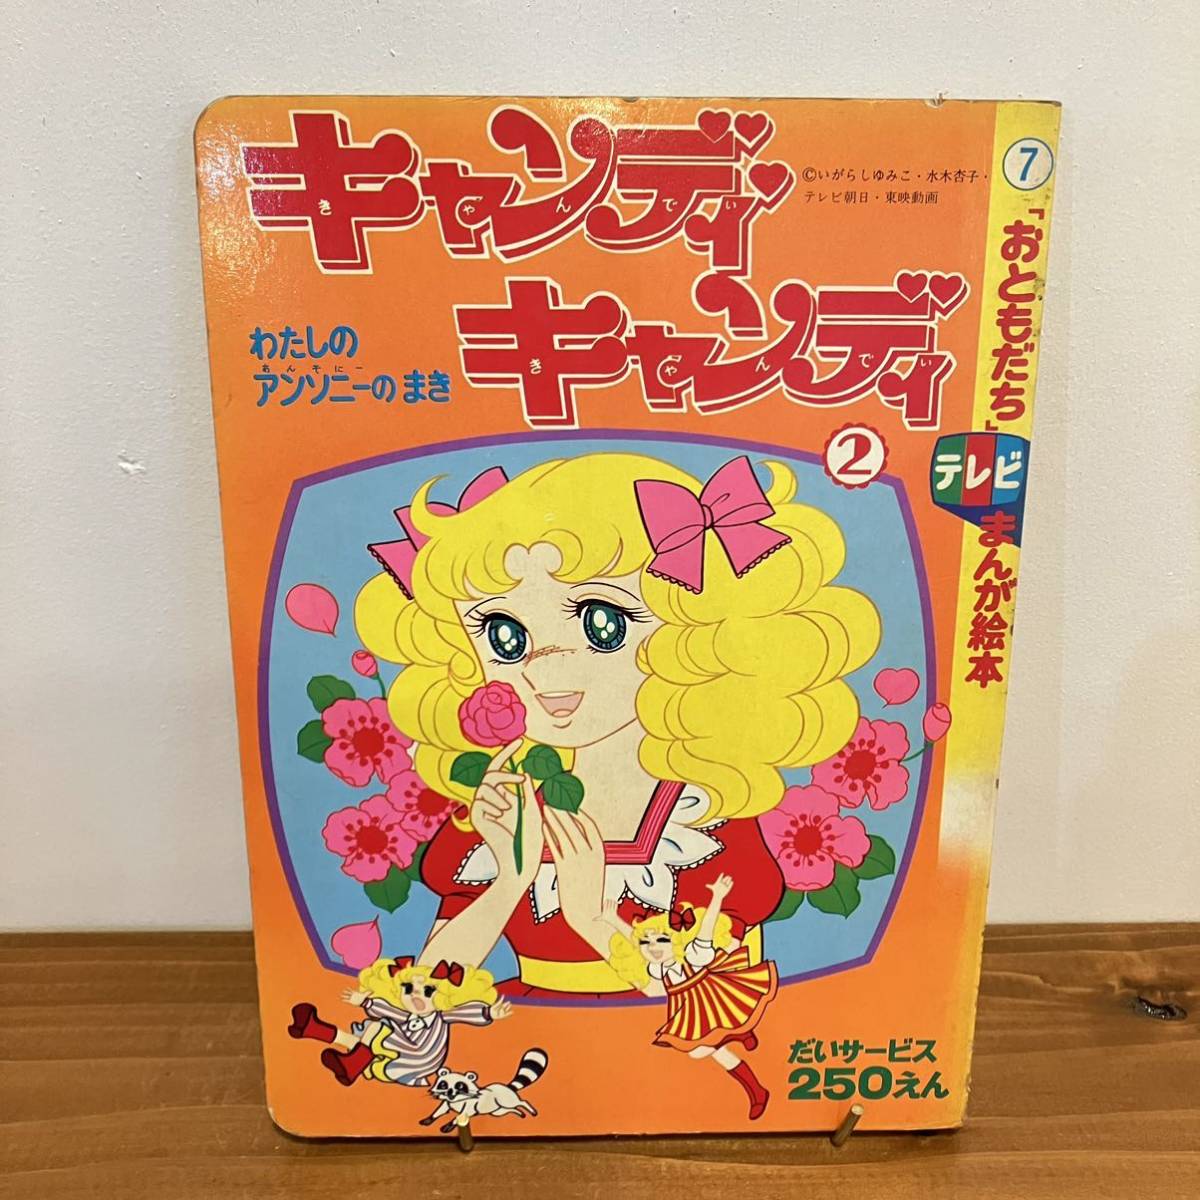 選べる配送時期 絶版「キャンディ・キャンディ」愛蔵版 全2巻セット 